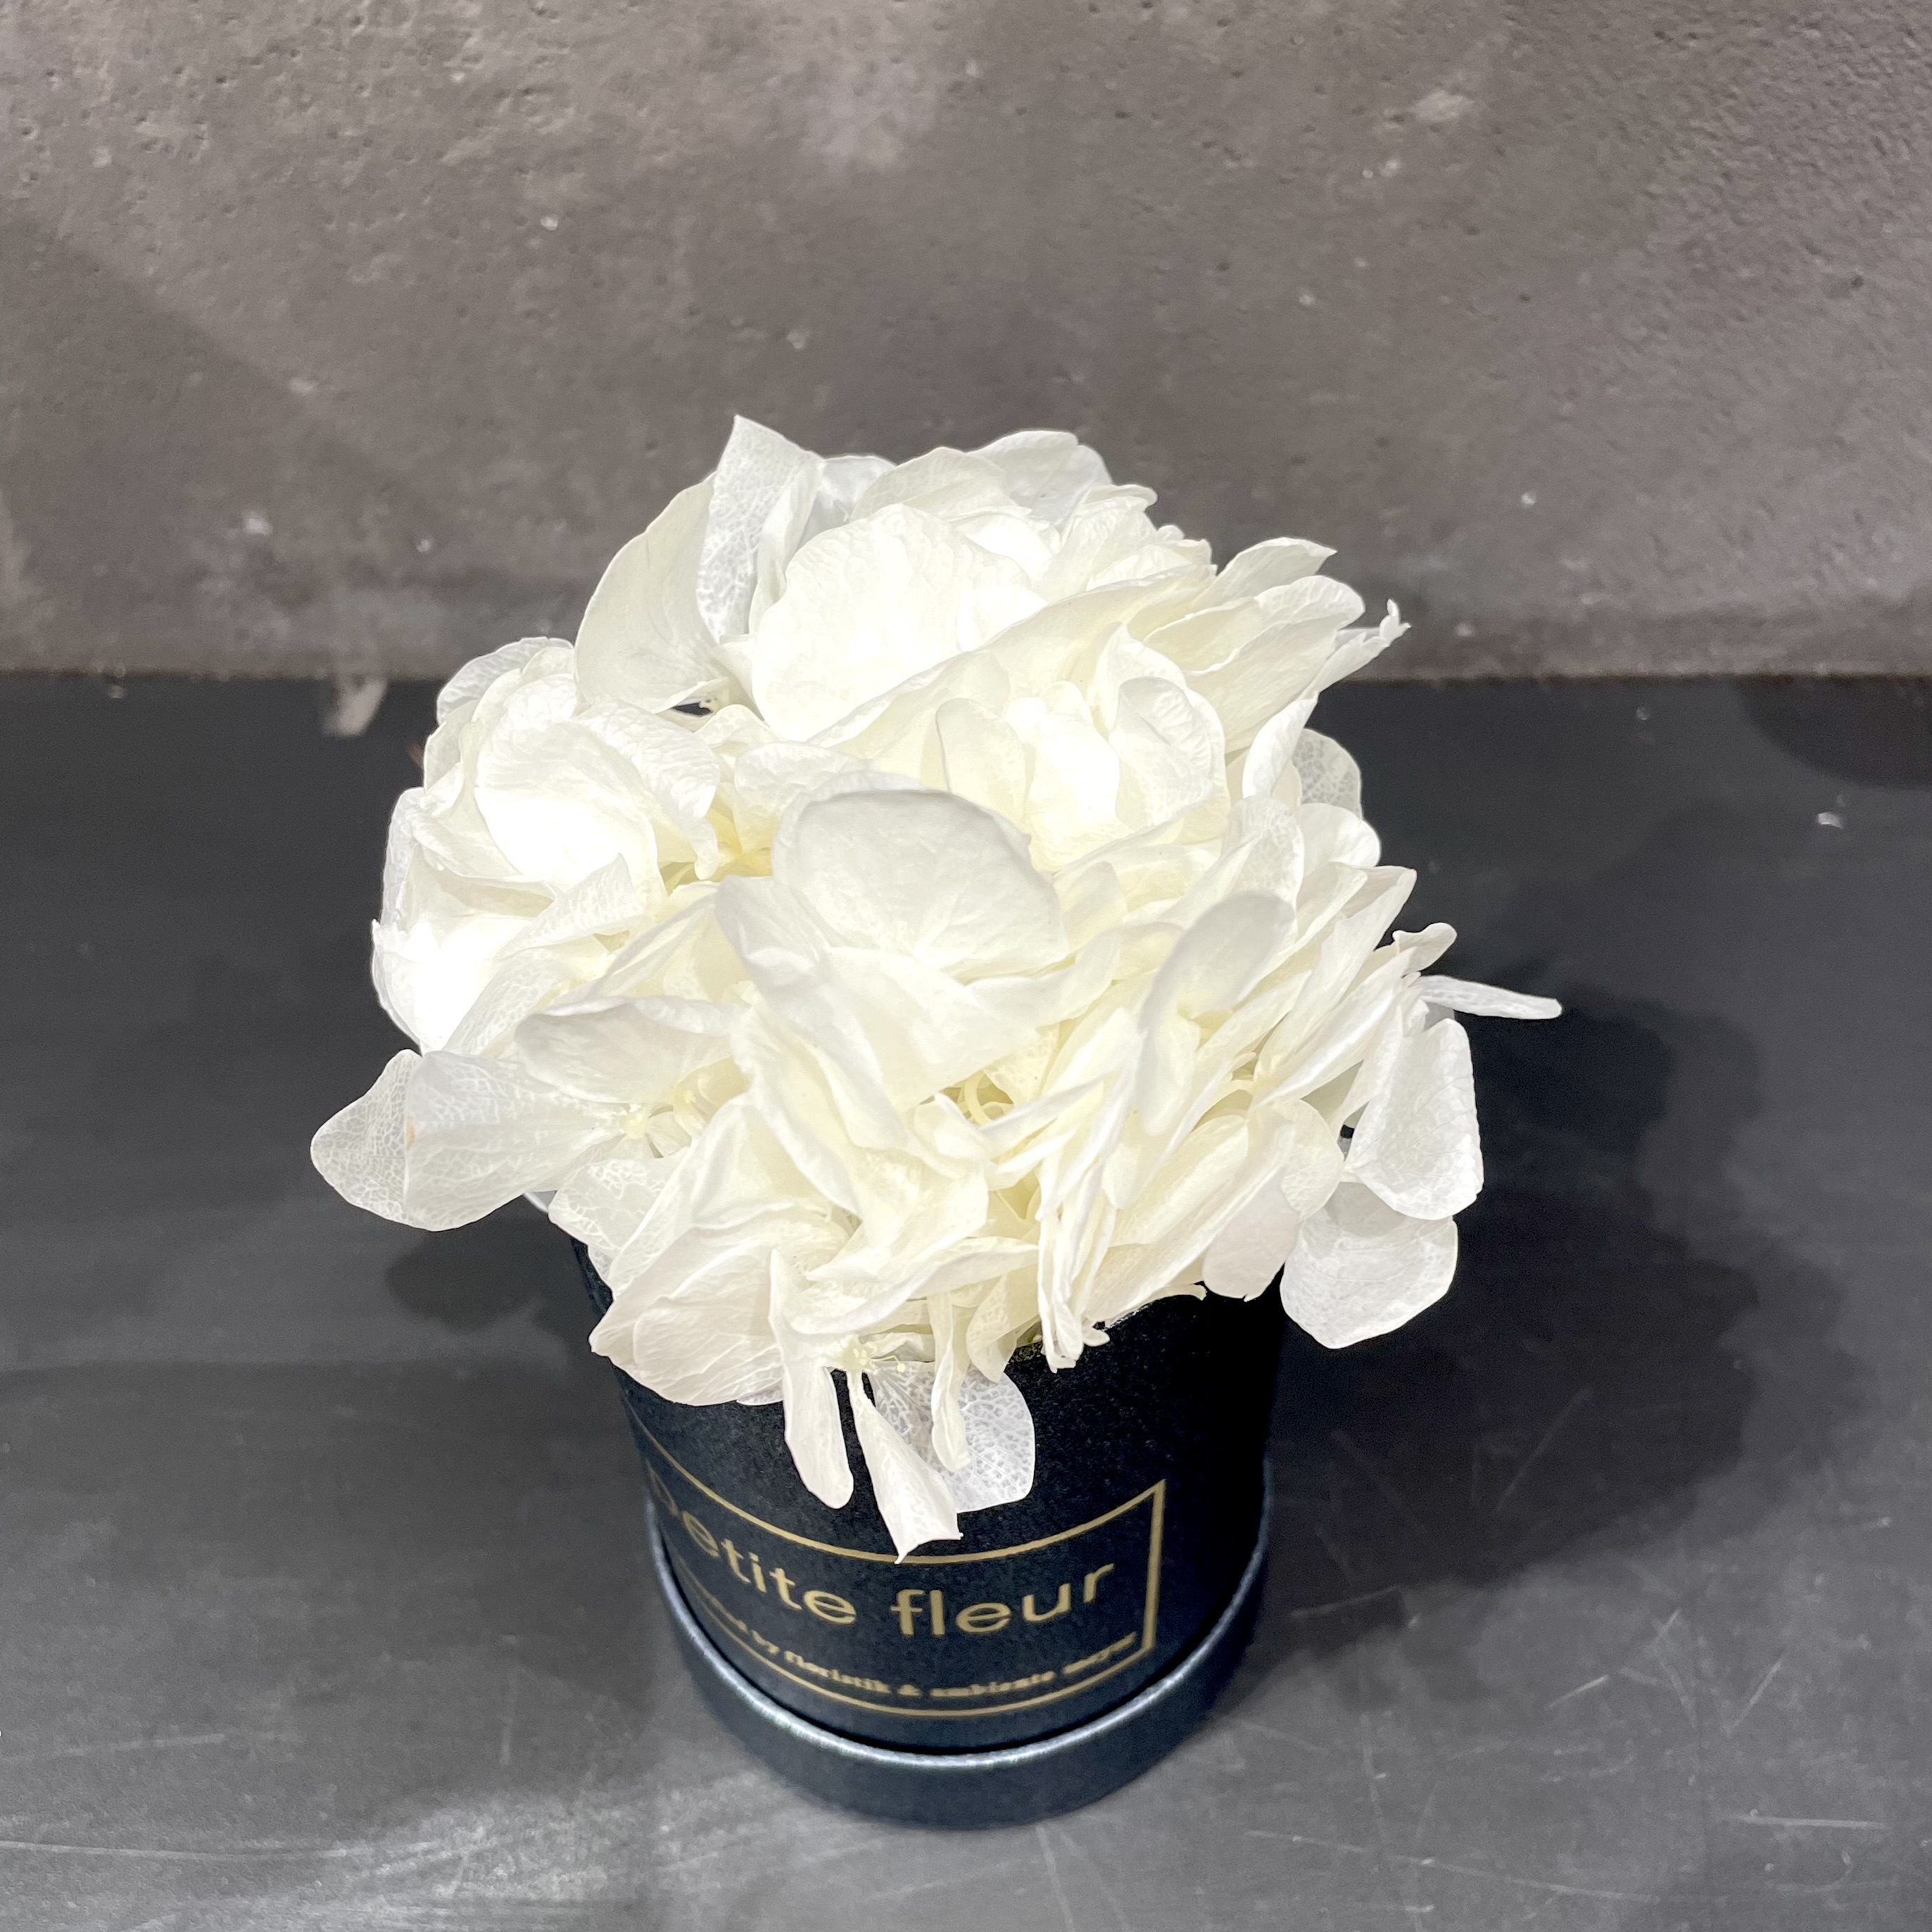 Petite Fleur Flowerbox XS Infinity Hortensien in black-satin Gold-Edition-Flowerbox 